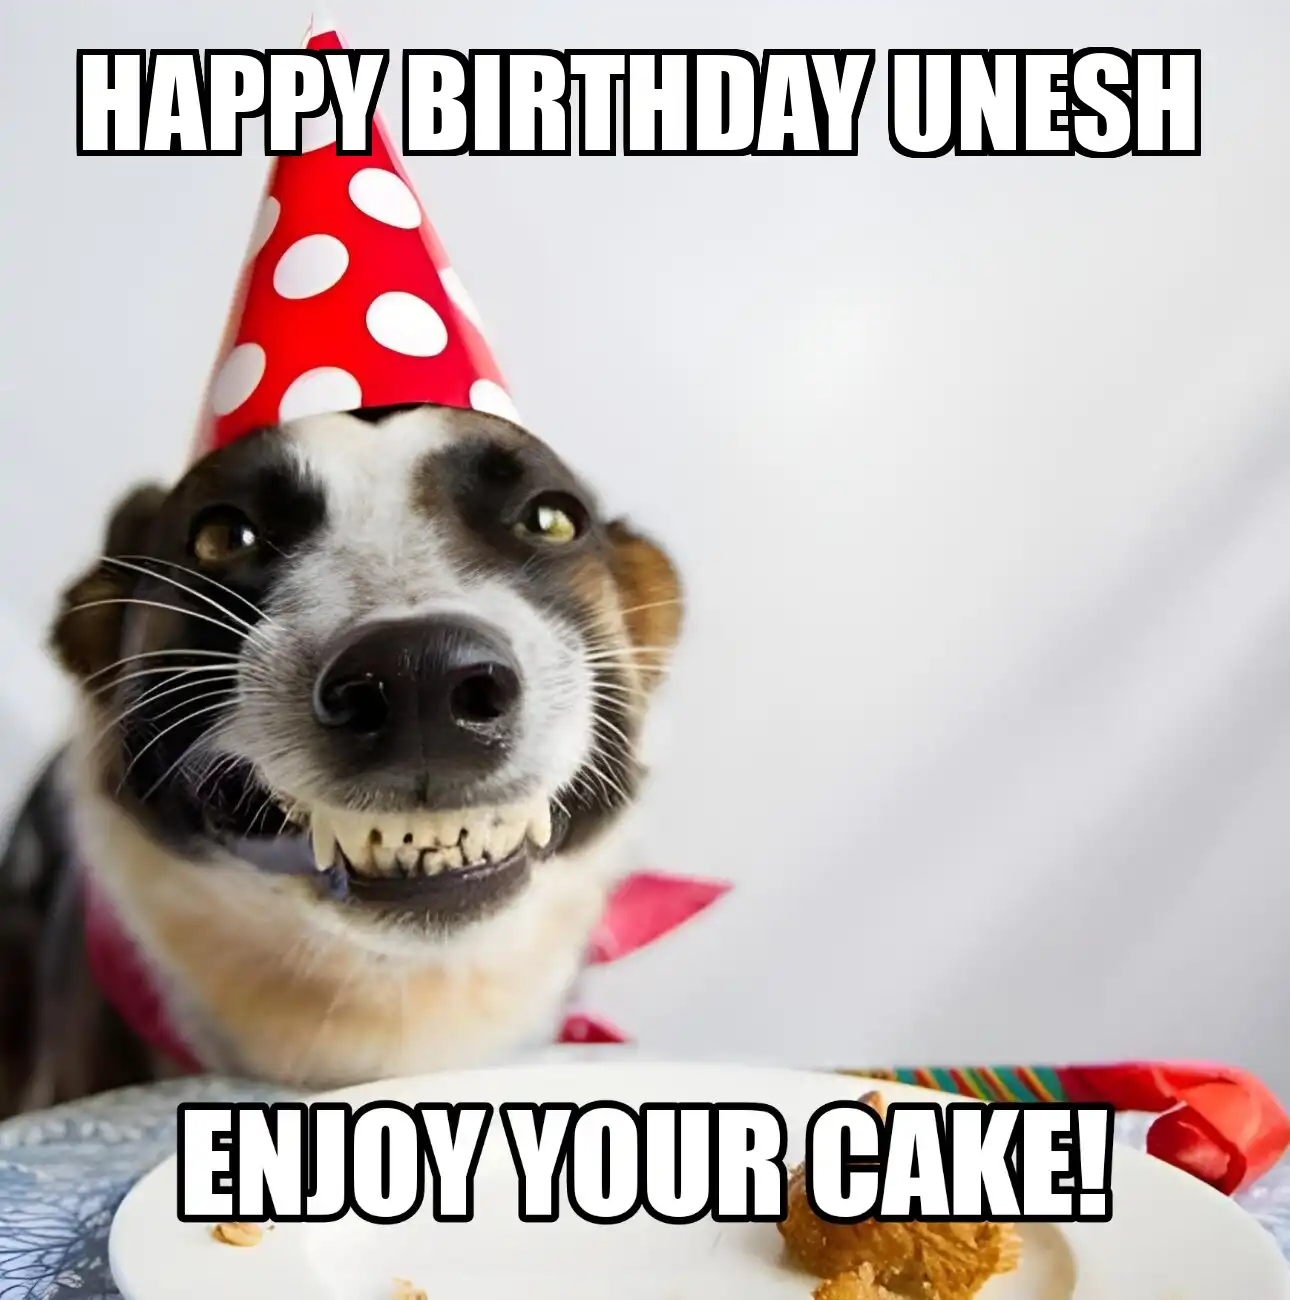 Happy Birthday Unesh Enjoy Your Cake Dog Meme